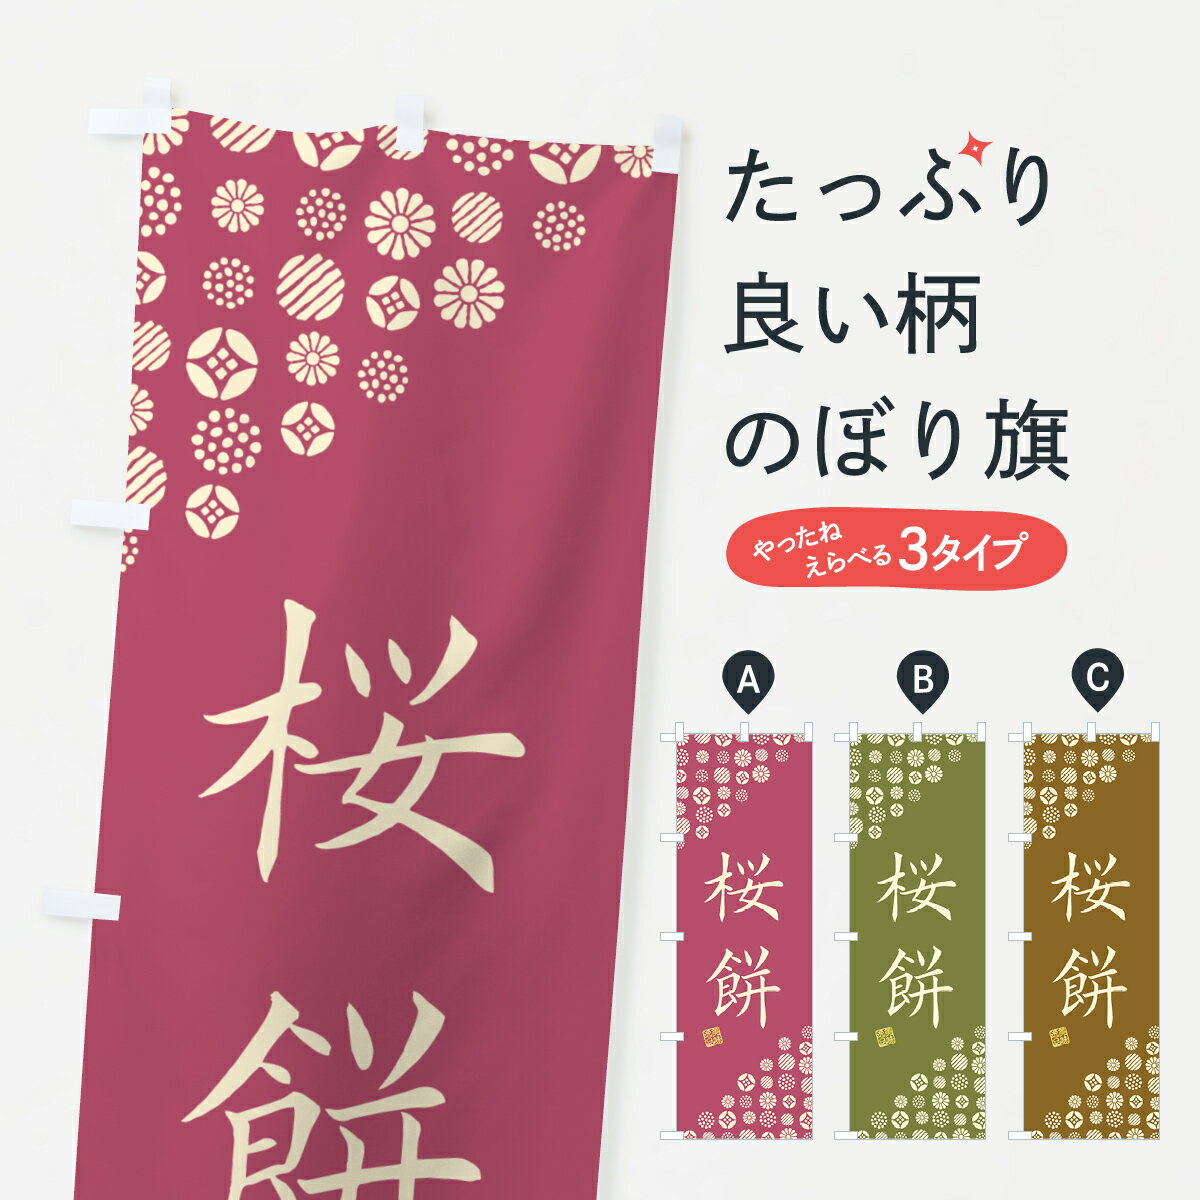 【ネコポス送料360】 のぼり旗 桜餅・和菓子のぼり 4S5